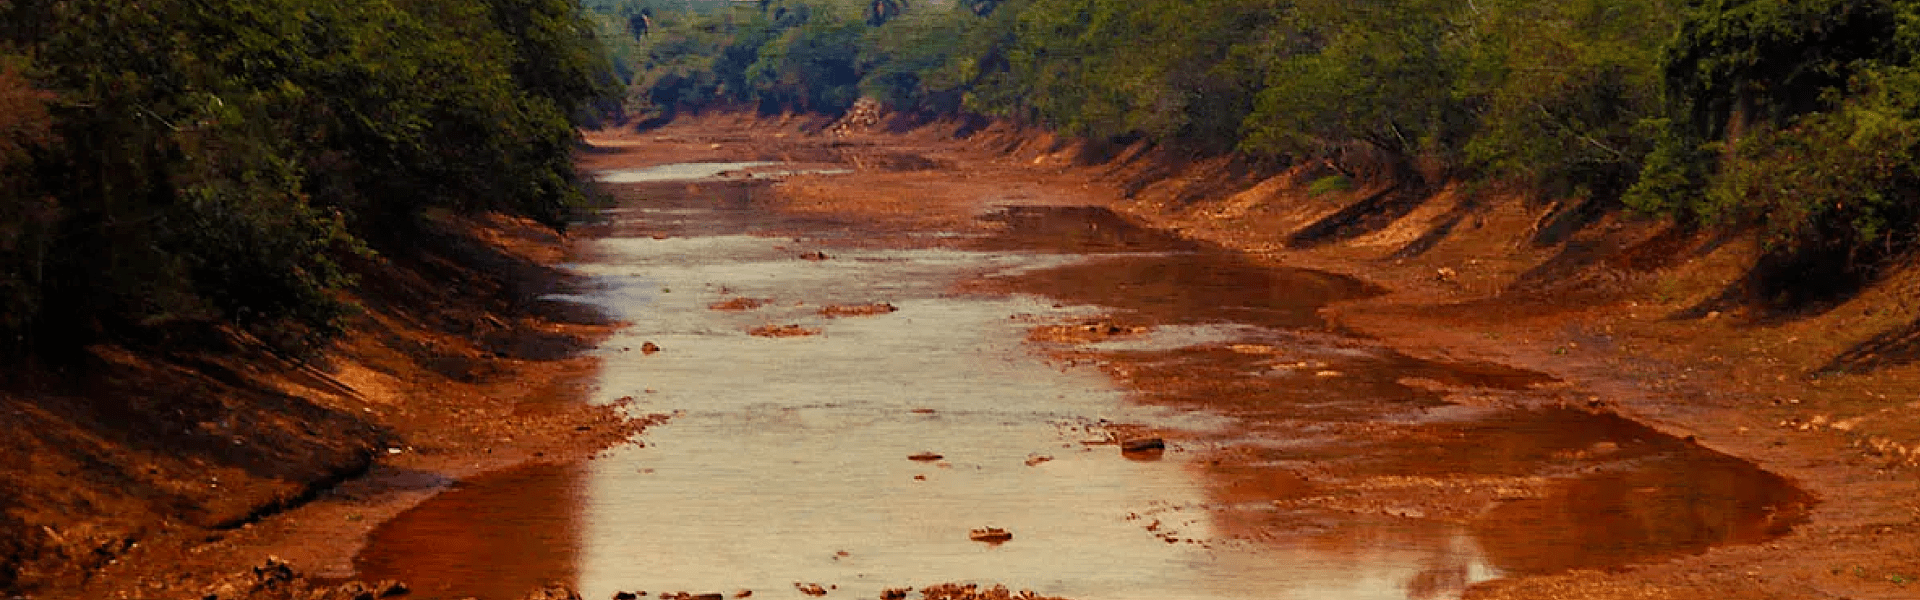 Brasil perdeu quase um terço de sua superfície de água nos últimos 40 anos